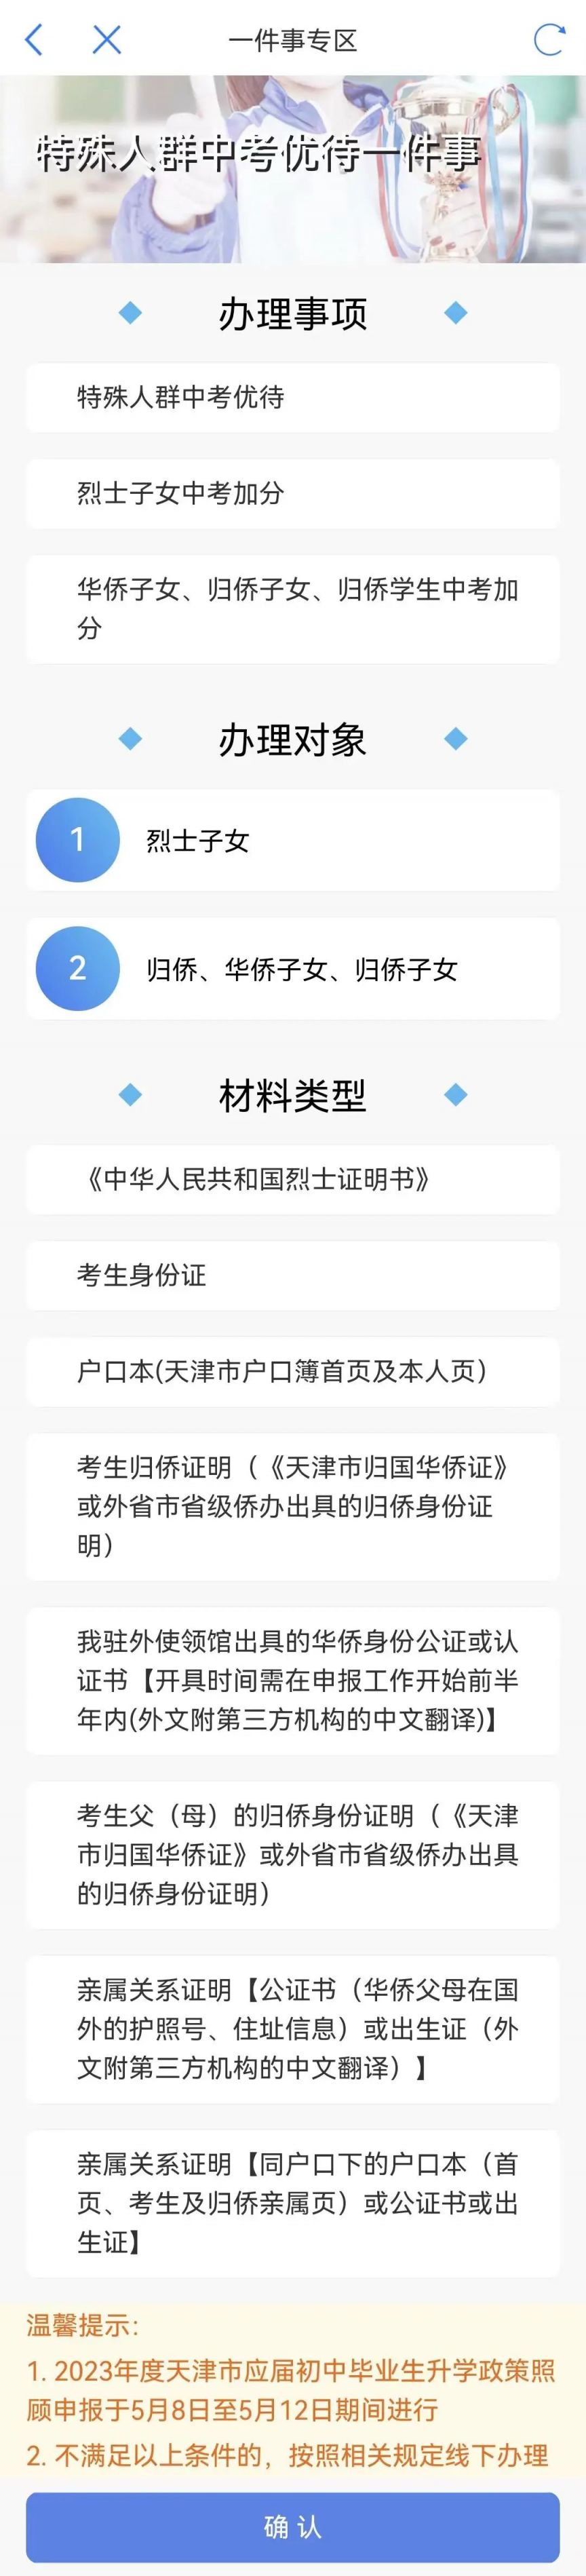 2023天津中考照顾政策这类人员可在网上申报